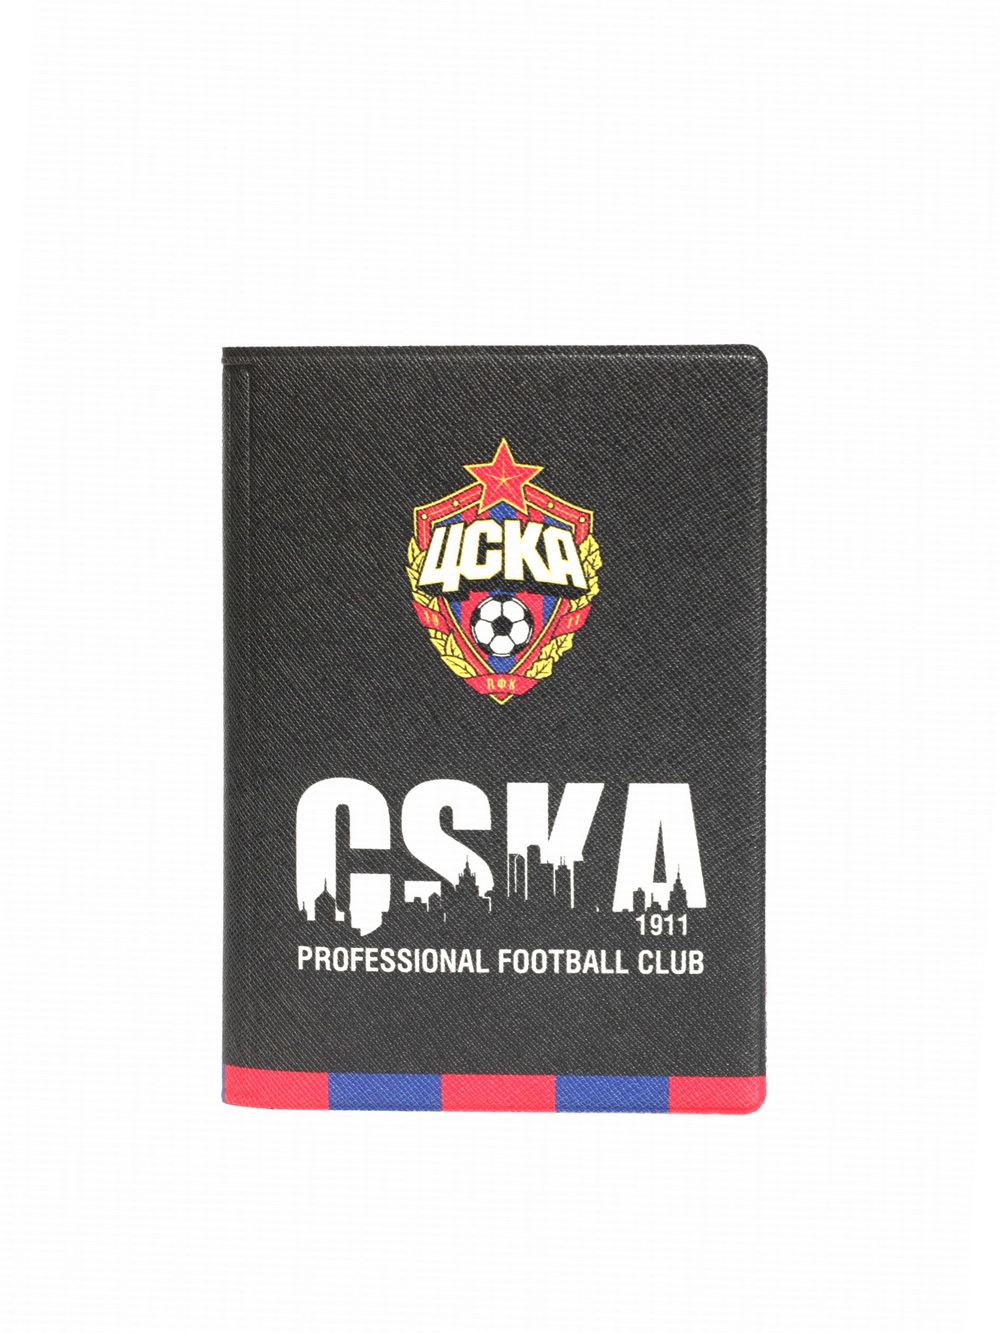 Обложка для паспорта PFC CSKA от Cskashop